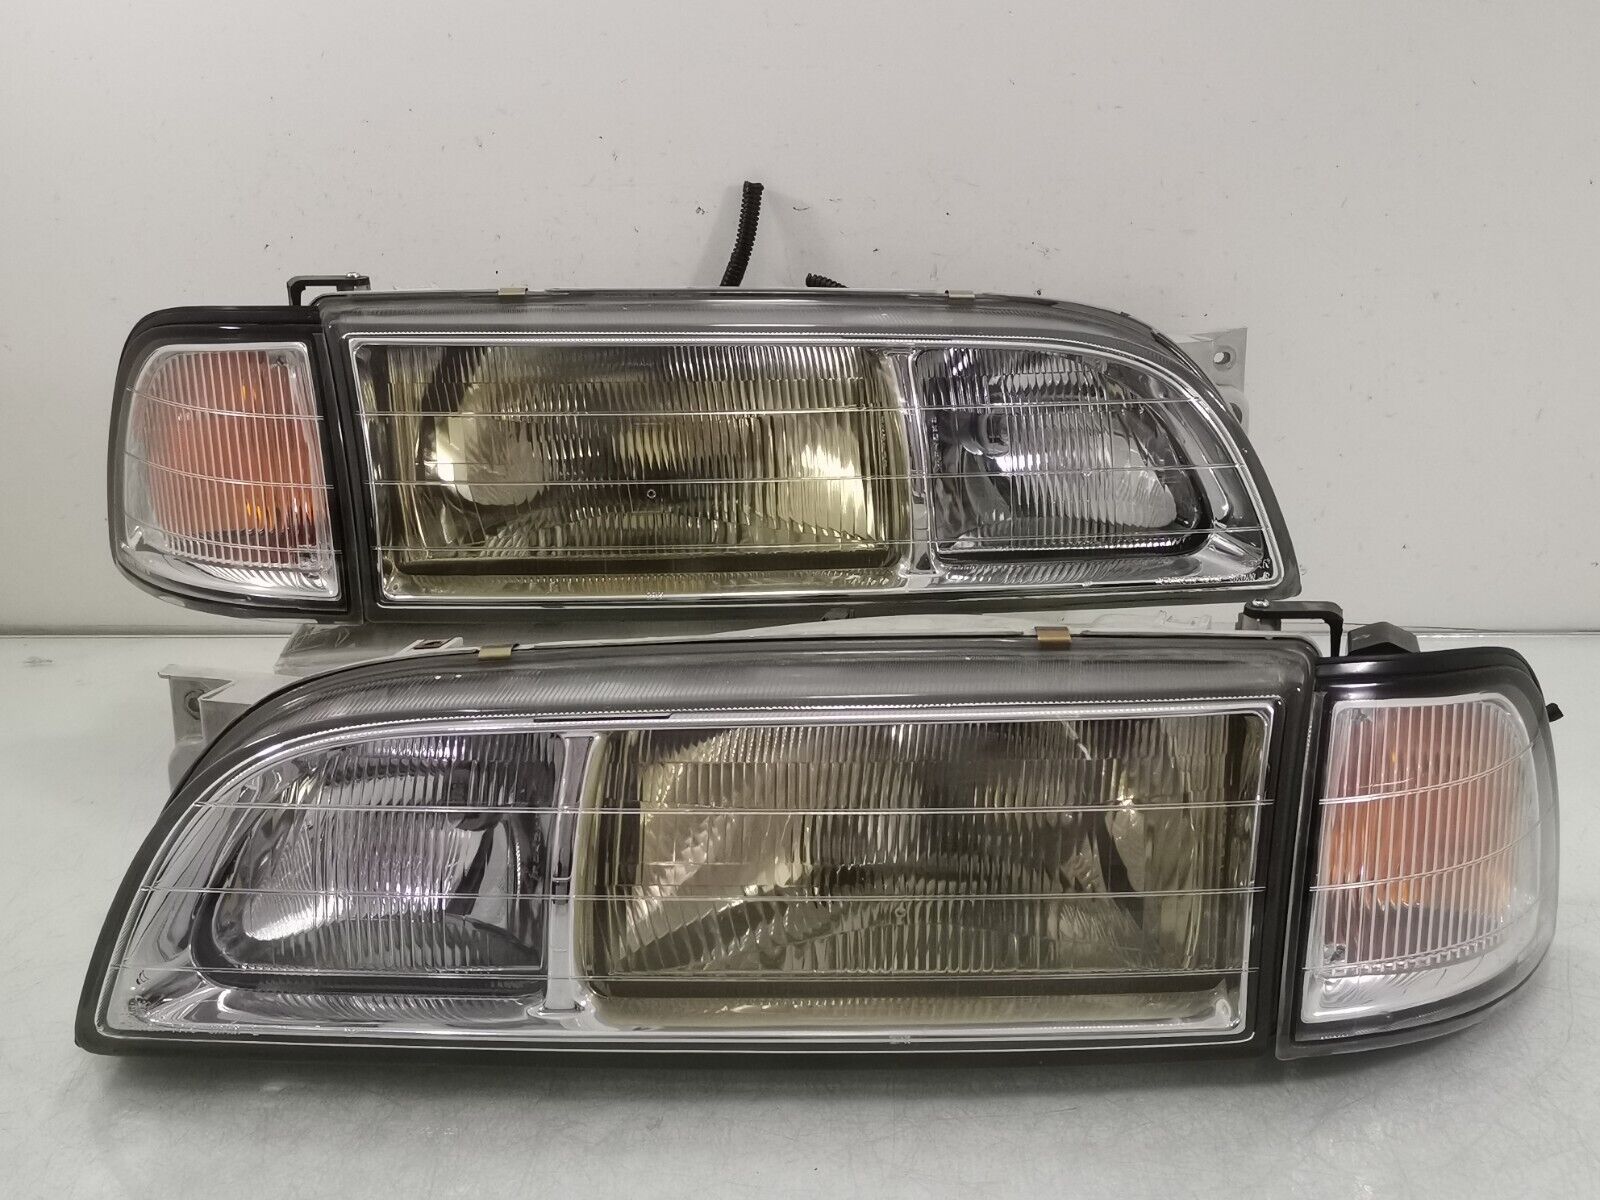 JDM Nissan INFINITI Q45 G50 Type V 1993 Facelift Front Headlight Lamps Light SET